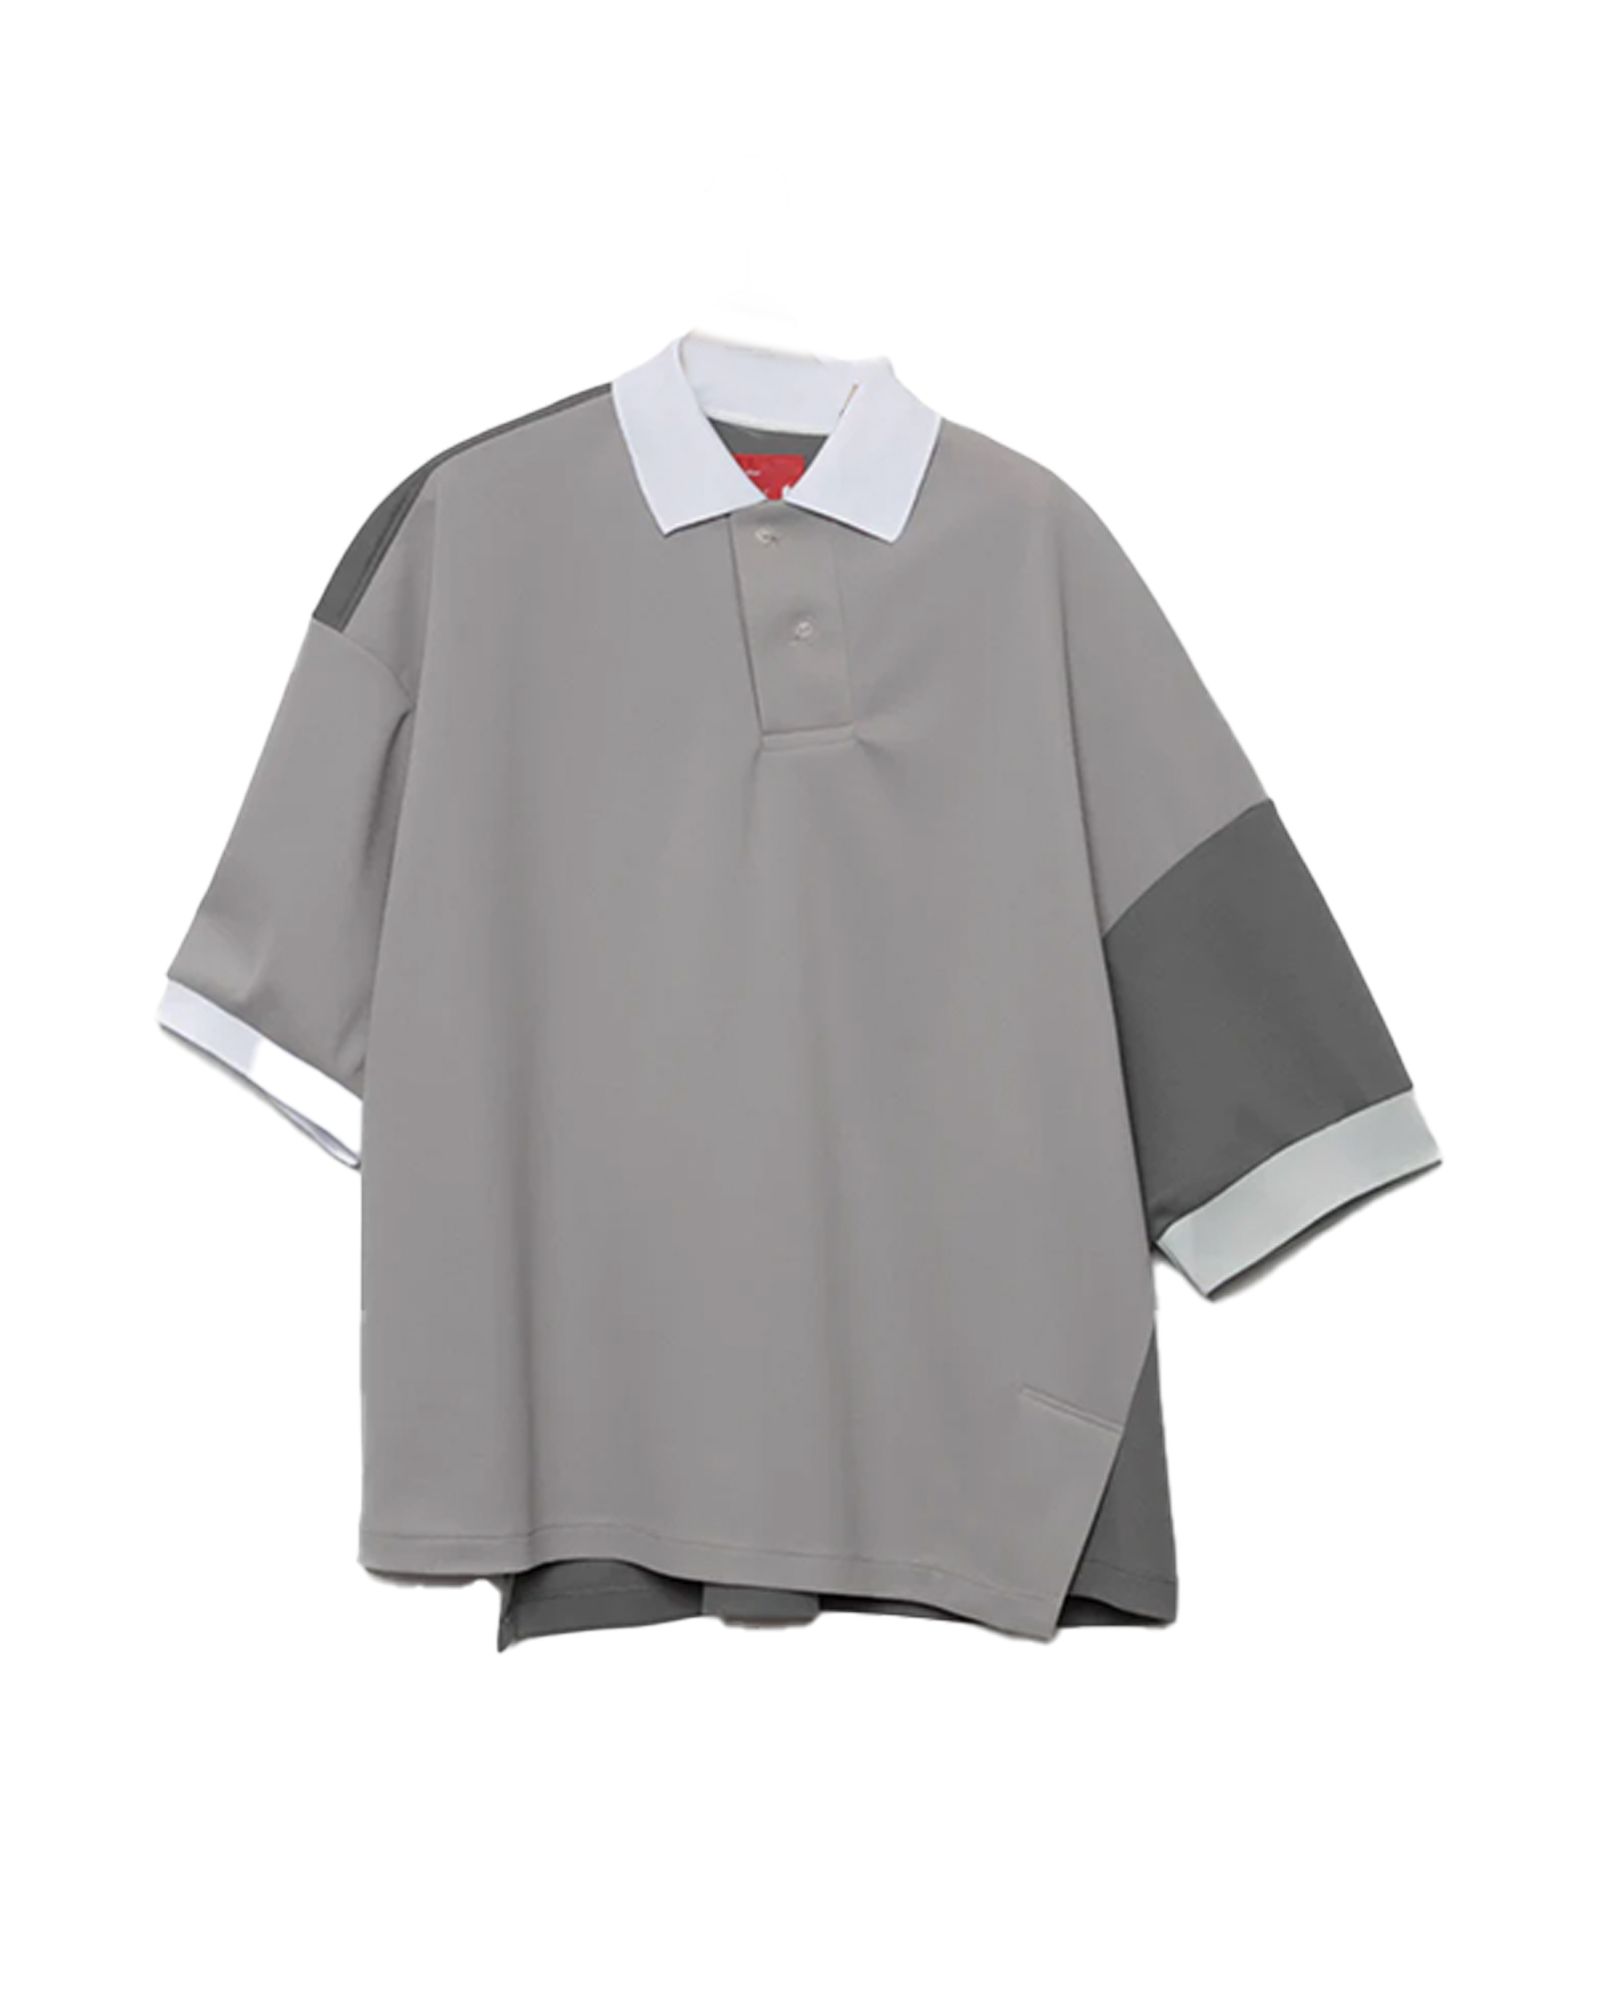 フミト ガンリュウ/Graffiti polo shirt/ポロシャツ/Gray - 2(Mサイズ)